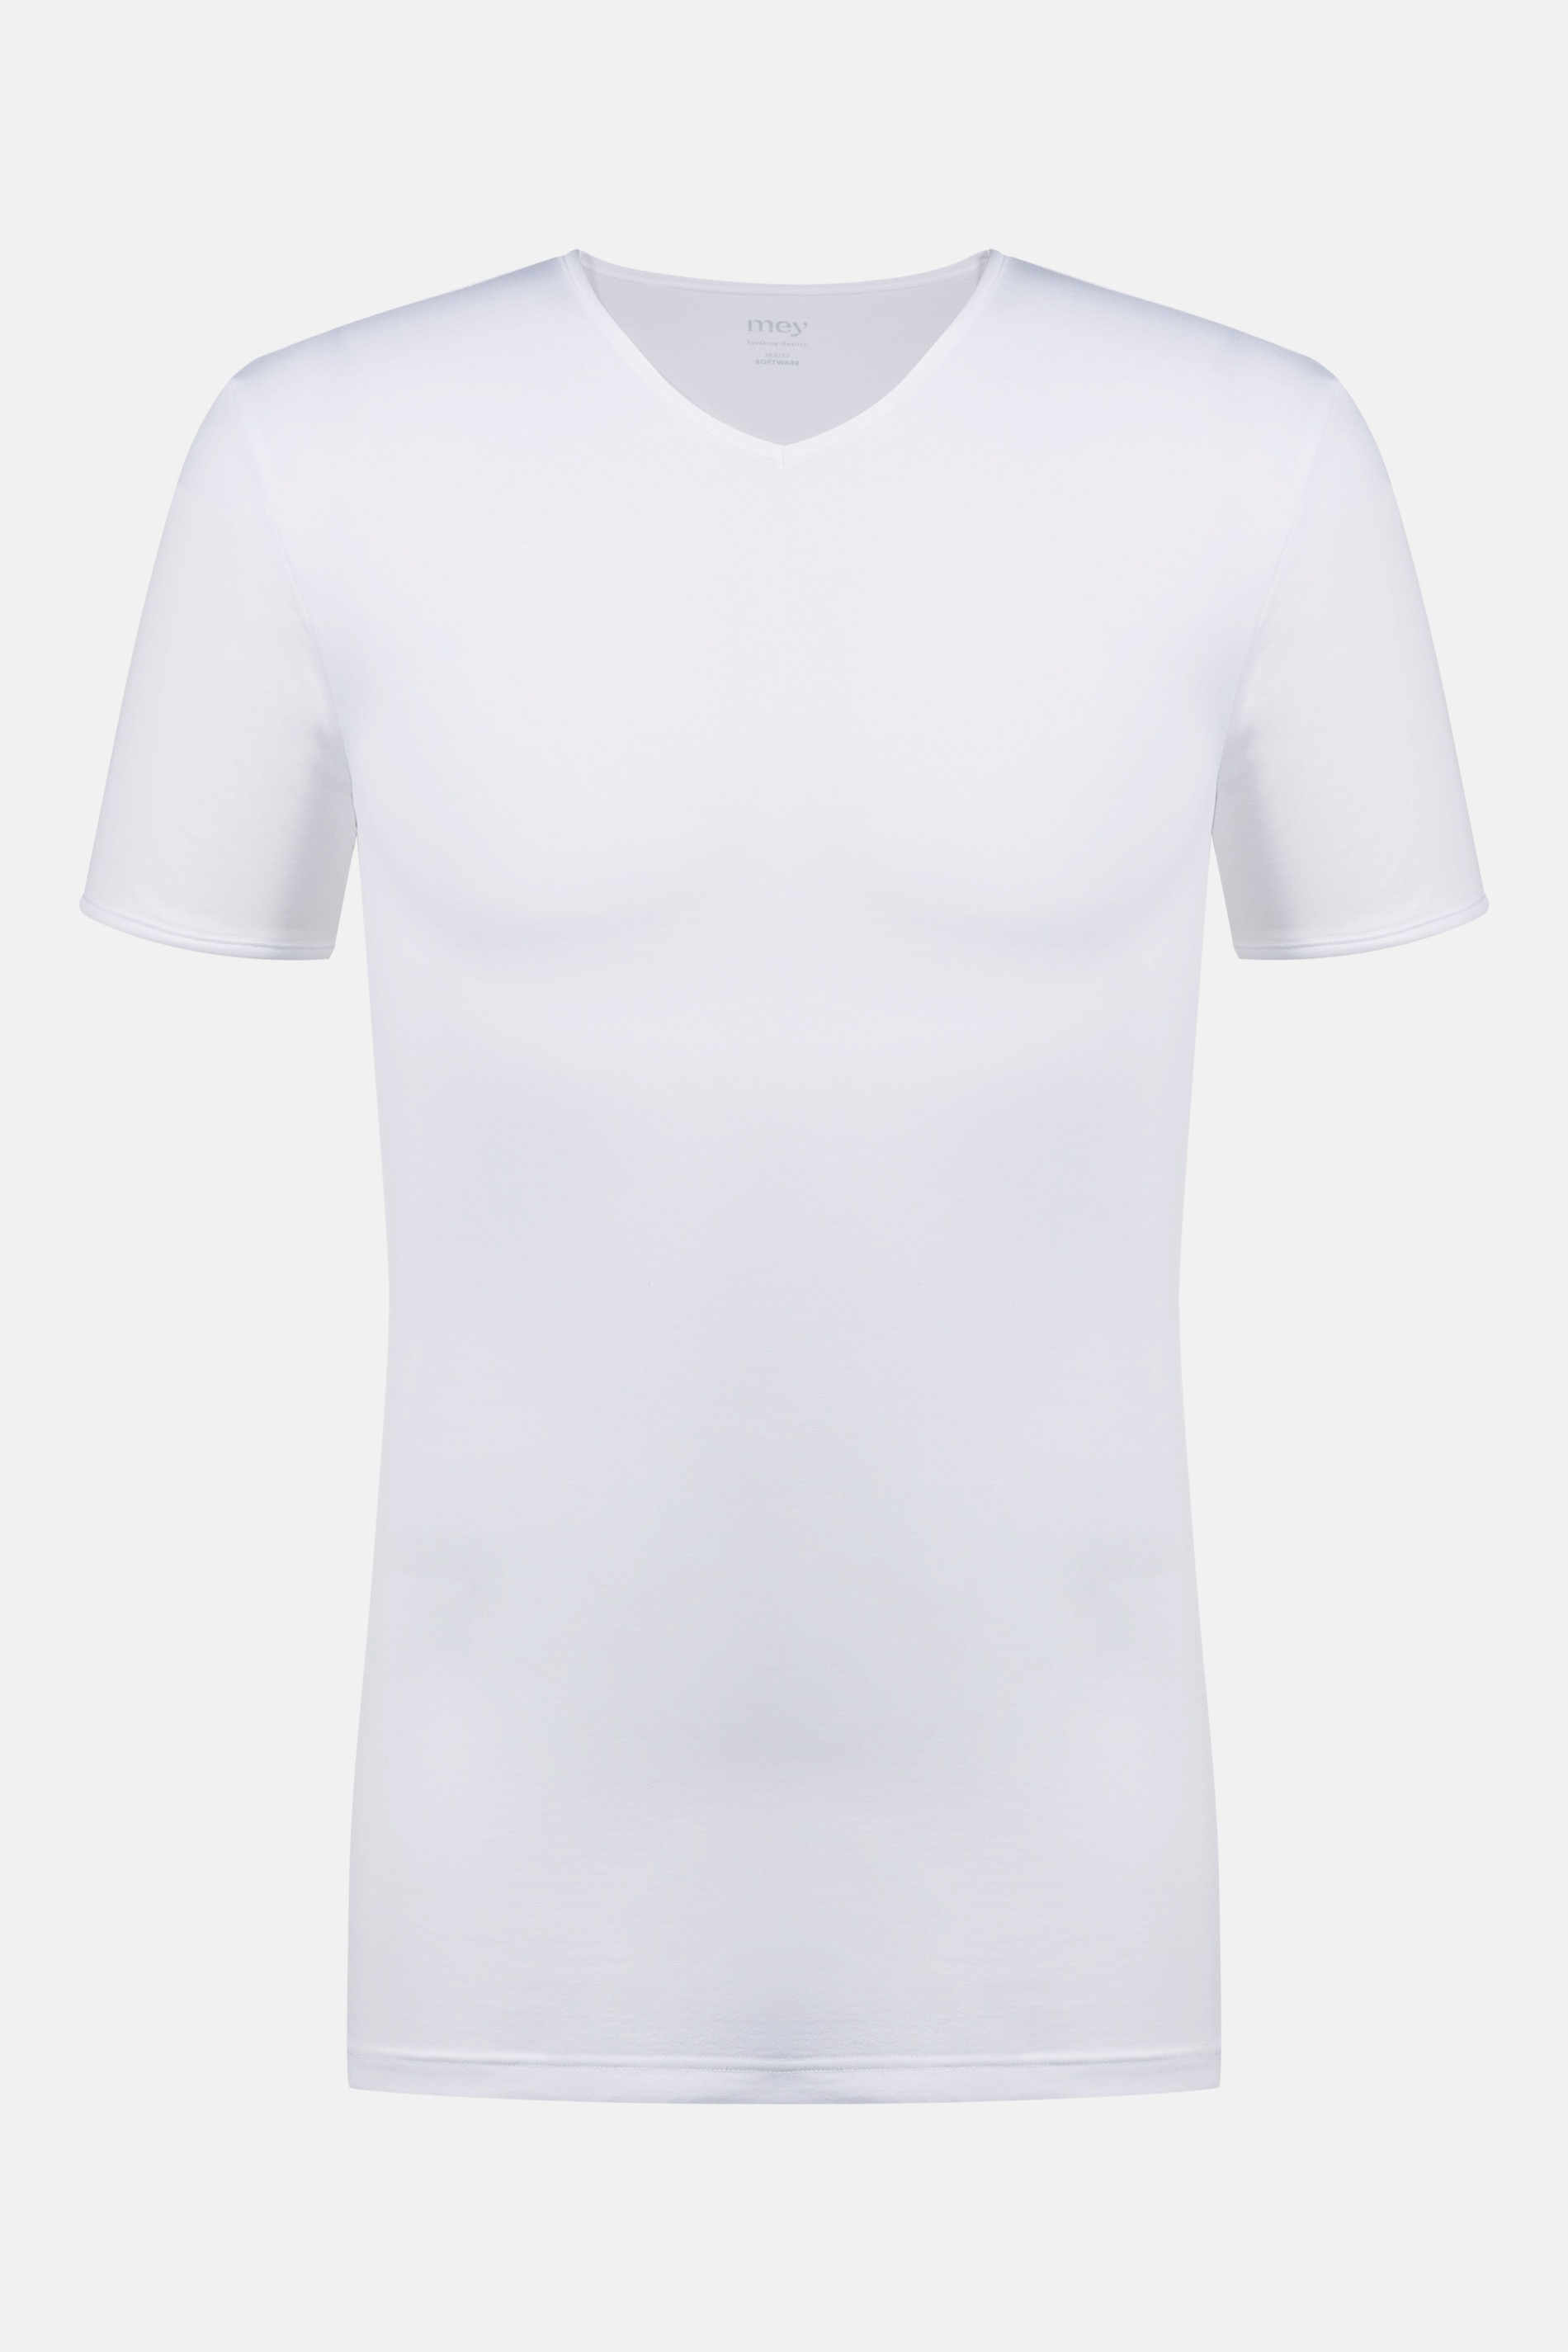 Shirt Weiss Serie Software Freisteller | mey®